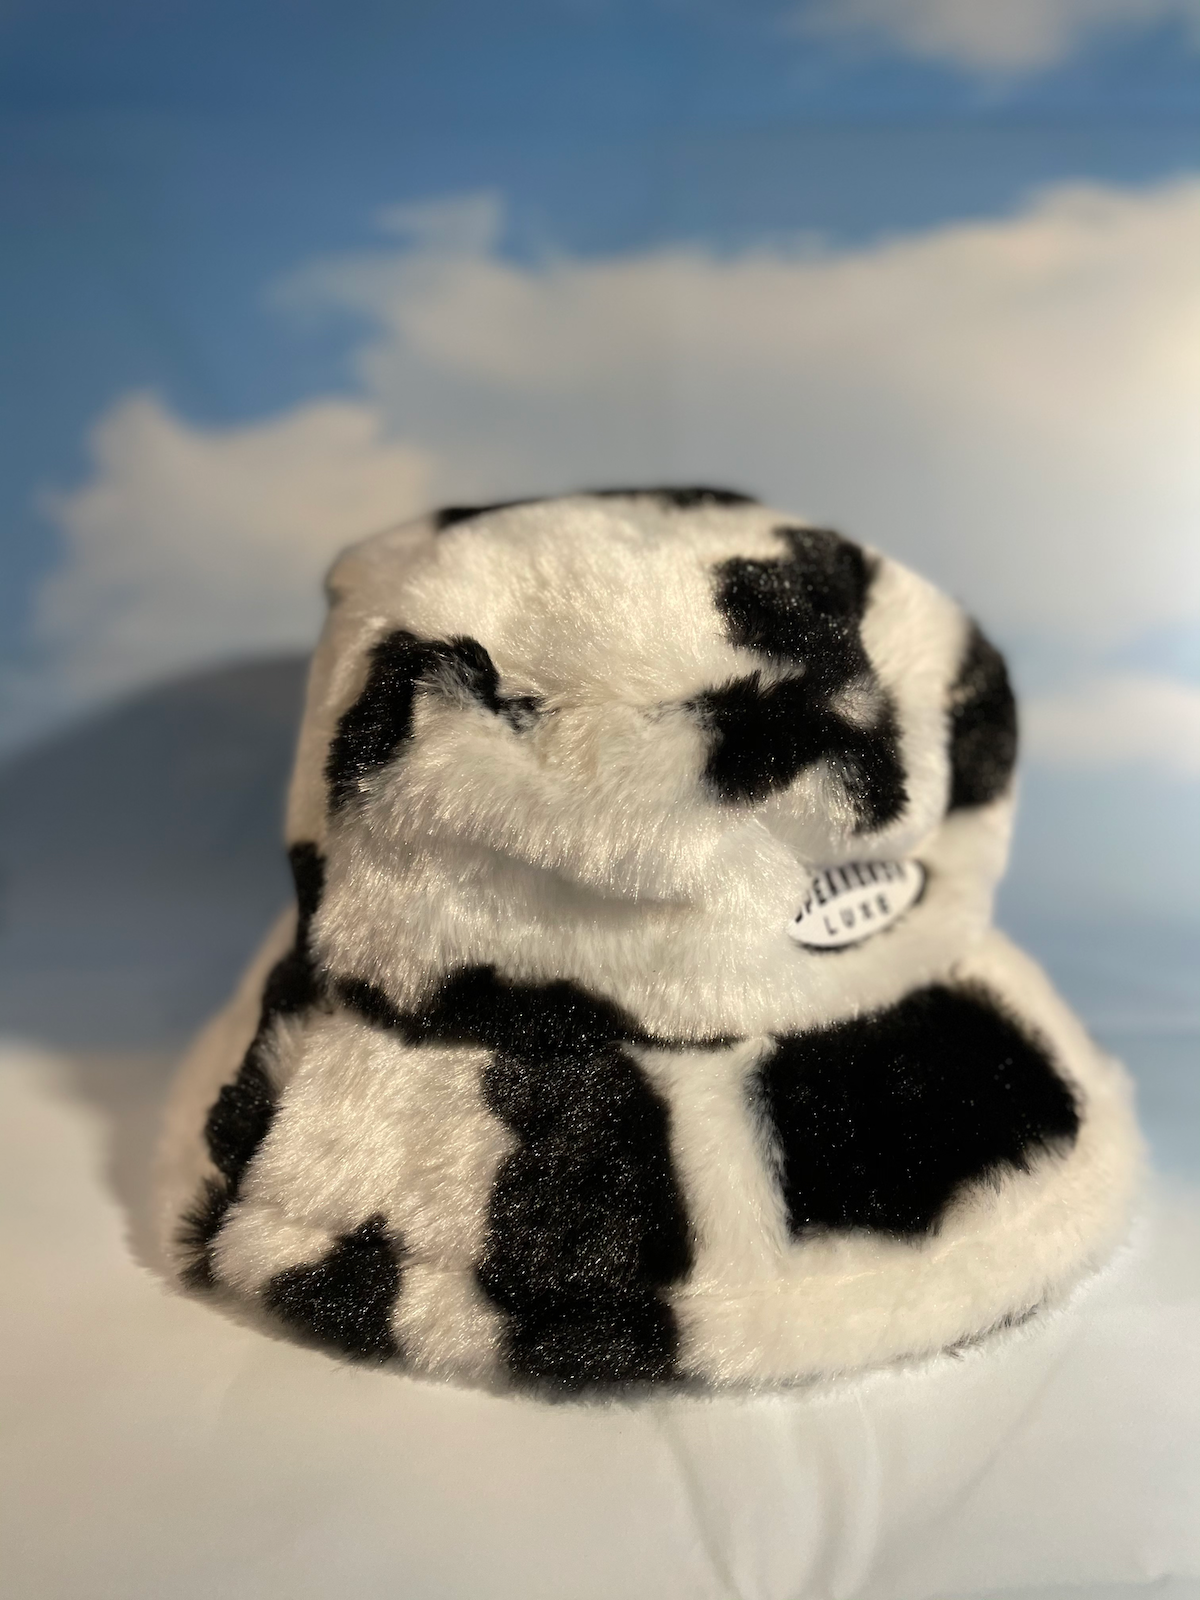 Fuzzy Bucket Hat + Waistbag Set - Black & White Cow Print